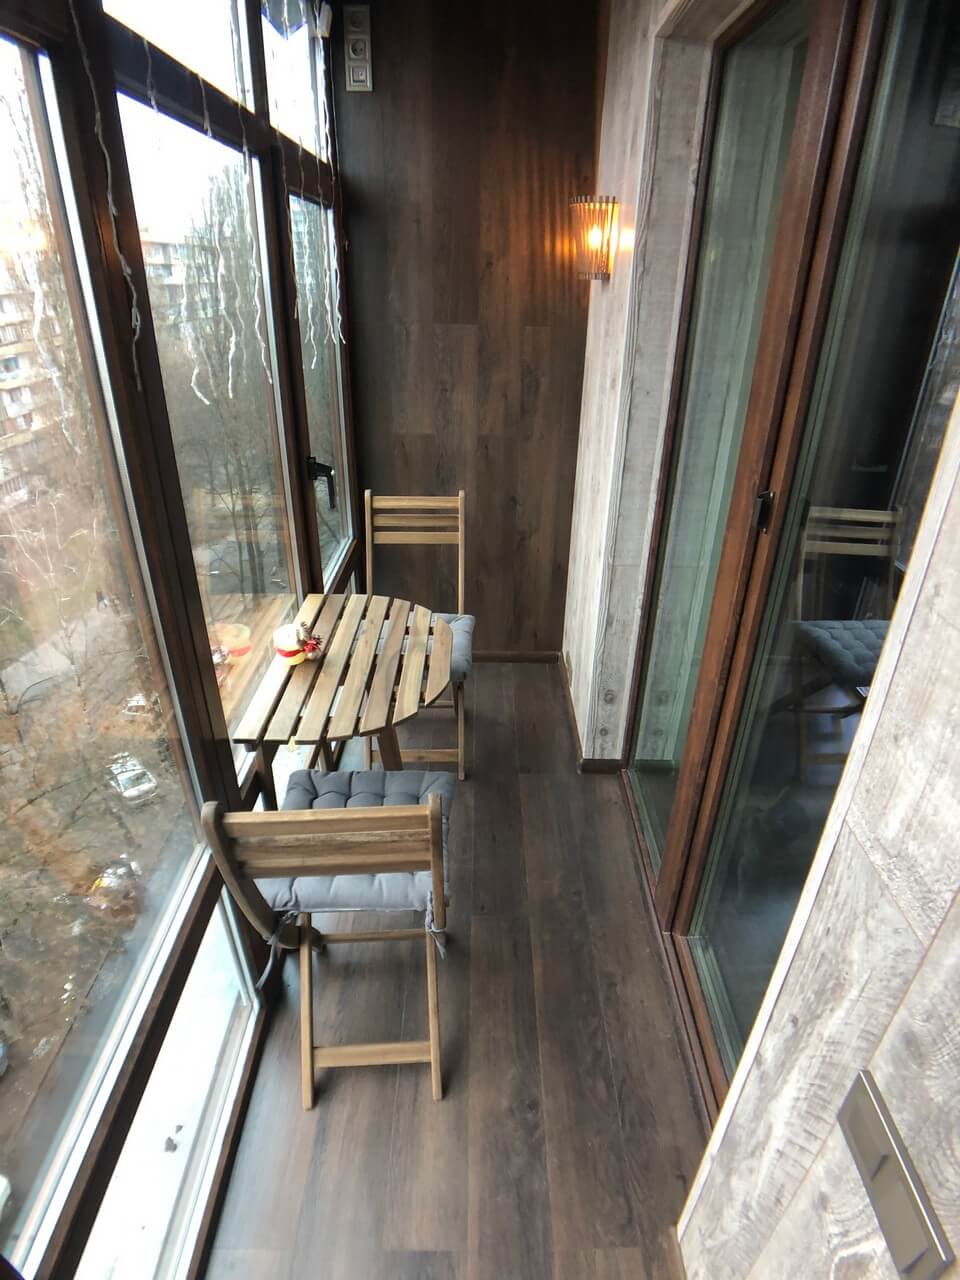 Французский балкон с отделкой ламинат в чешке. Киев, ул. Зодчих, 40 12